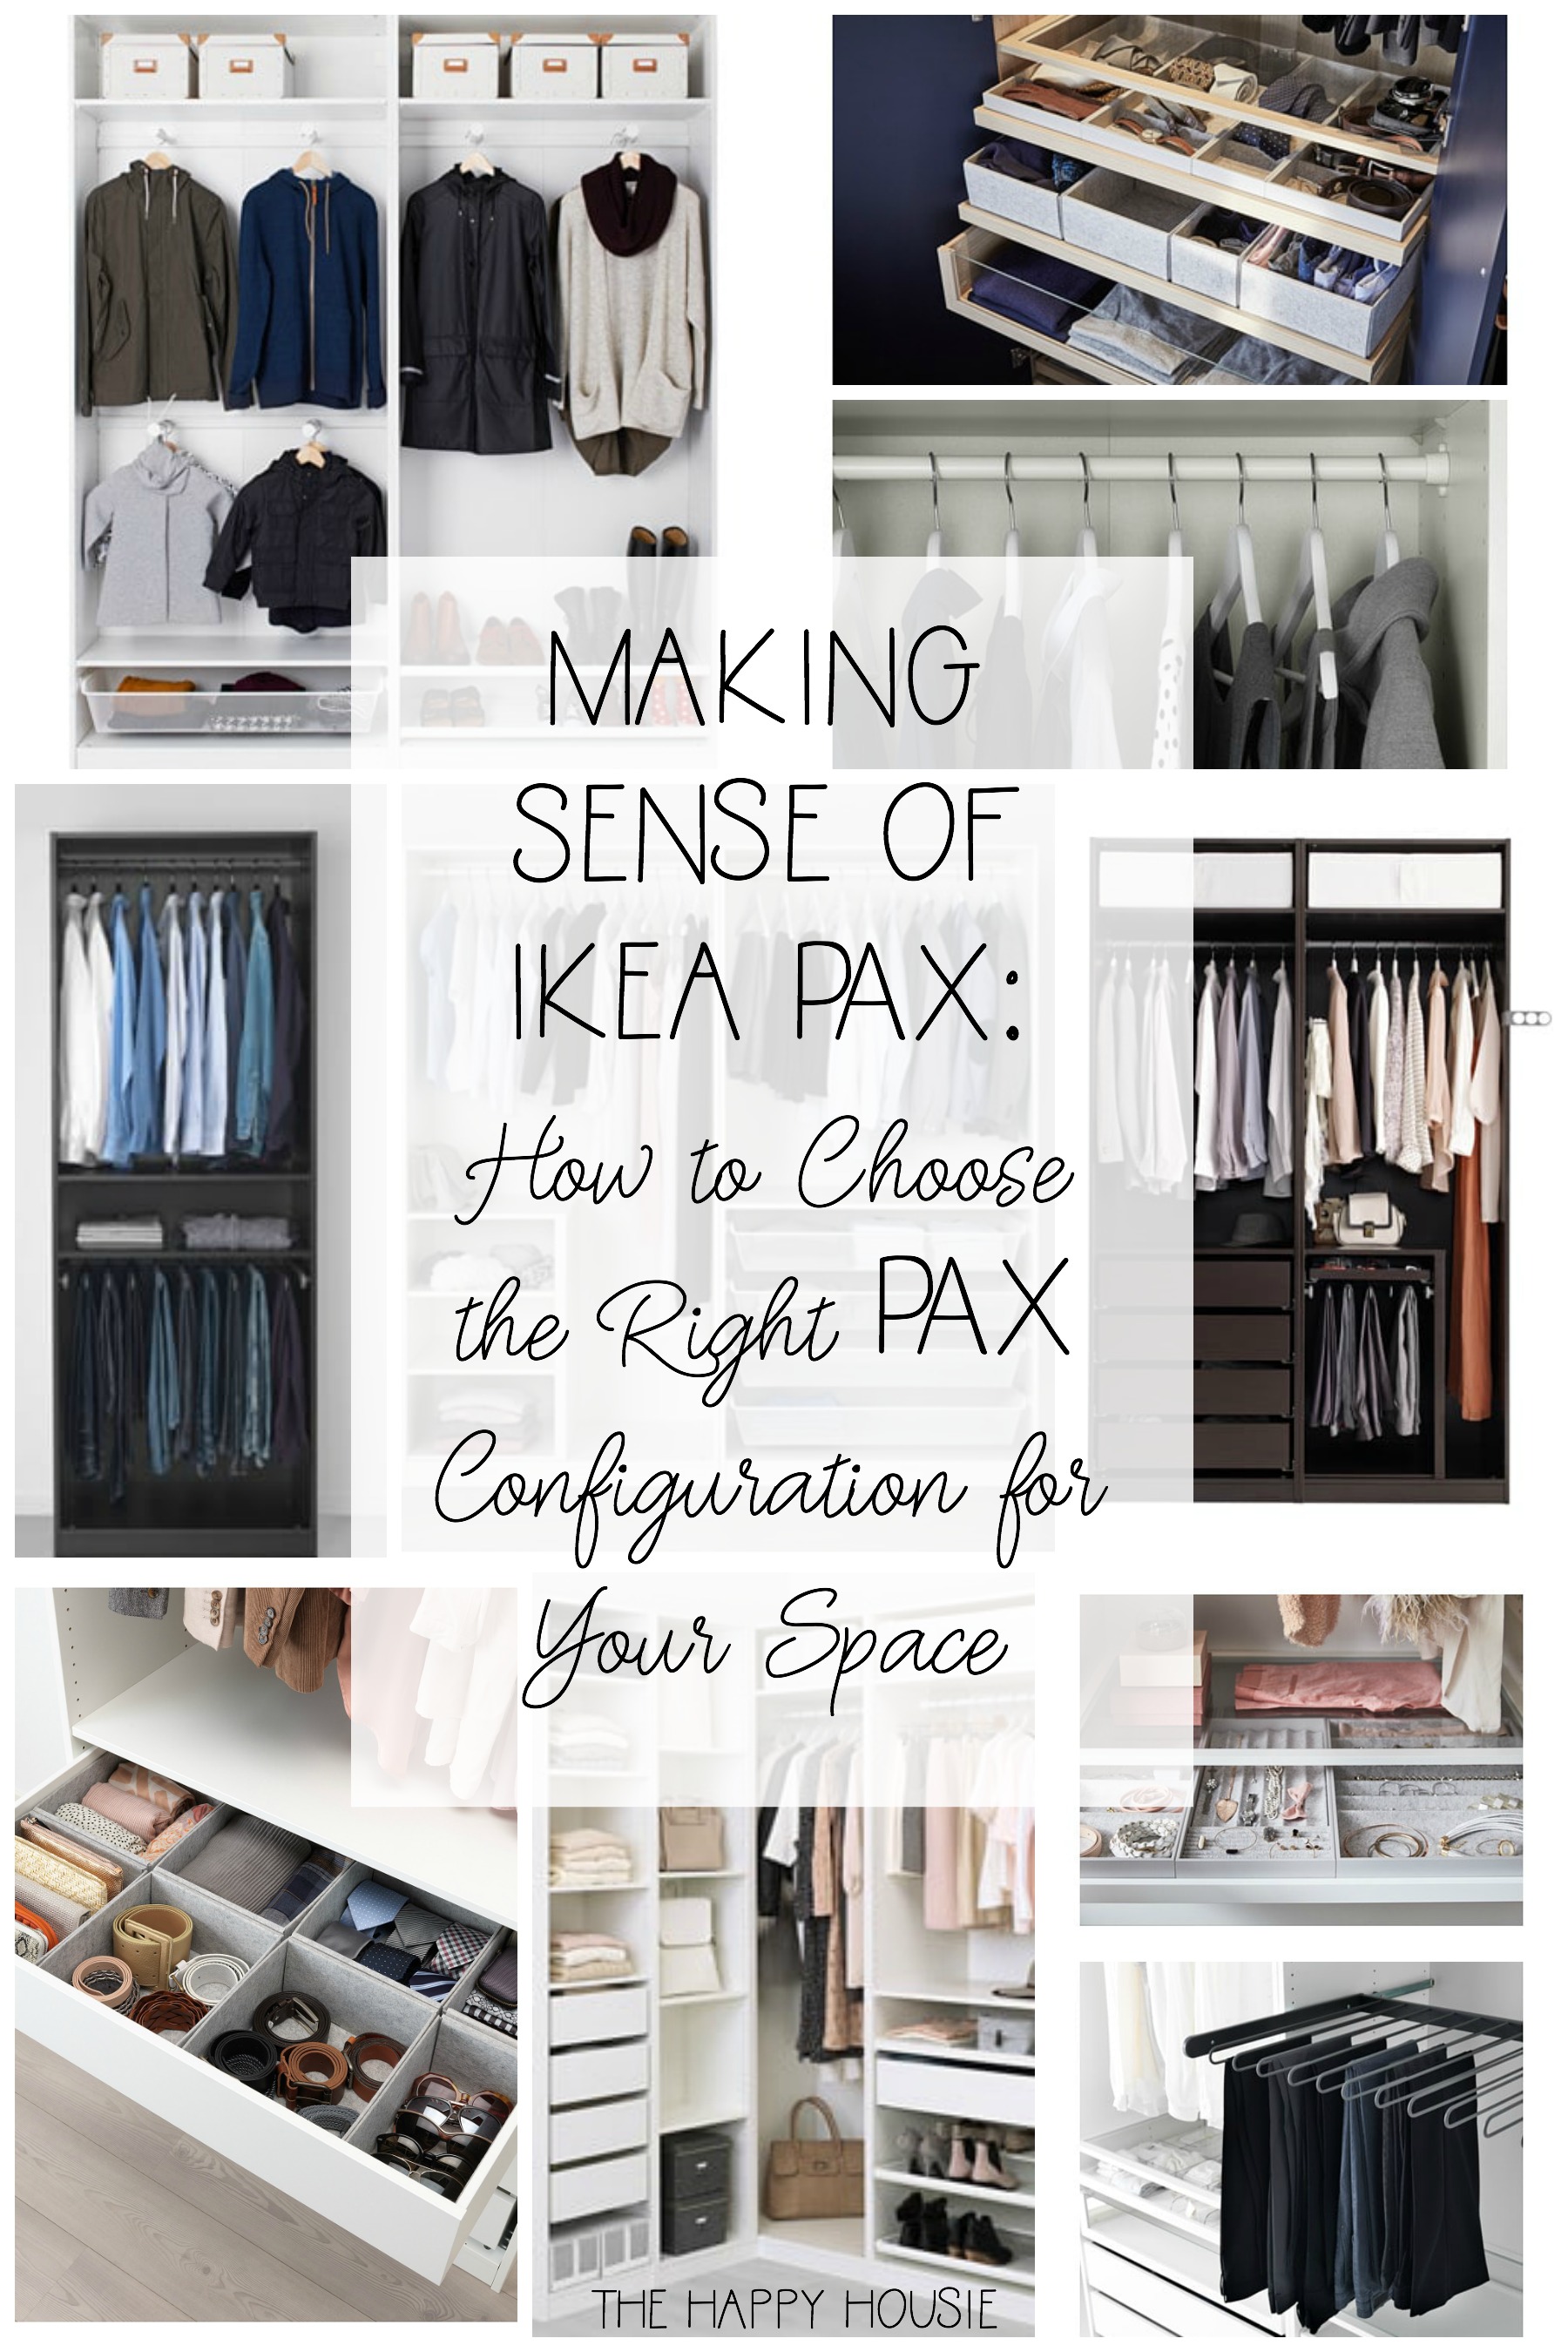 Making Sense Of Ikea Pax poster.